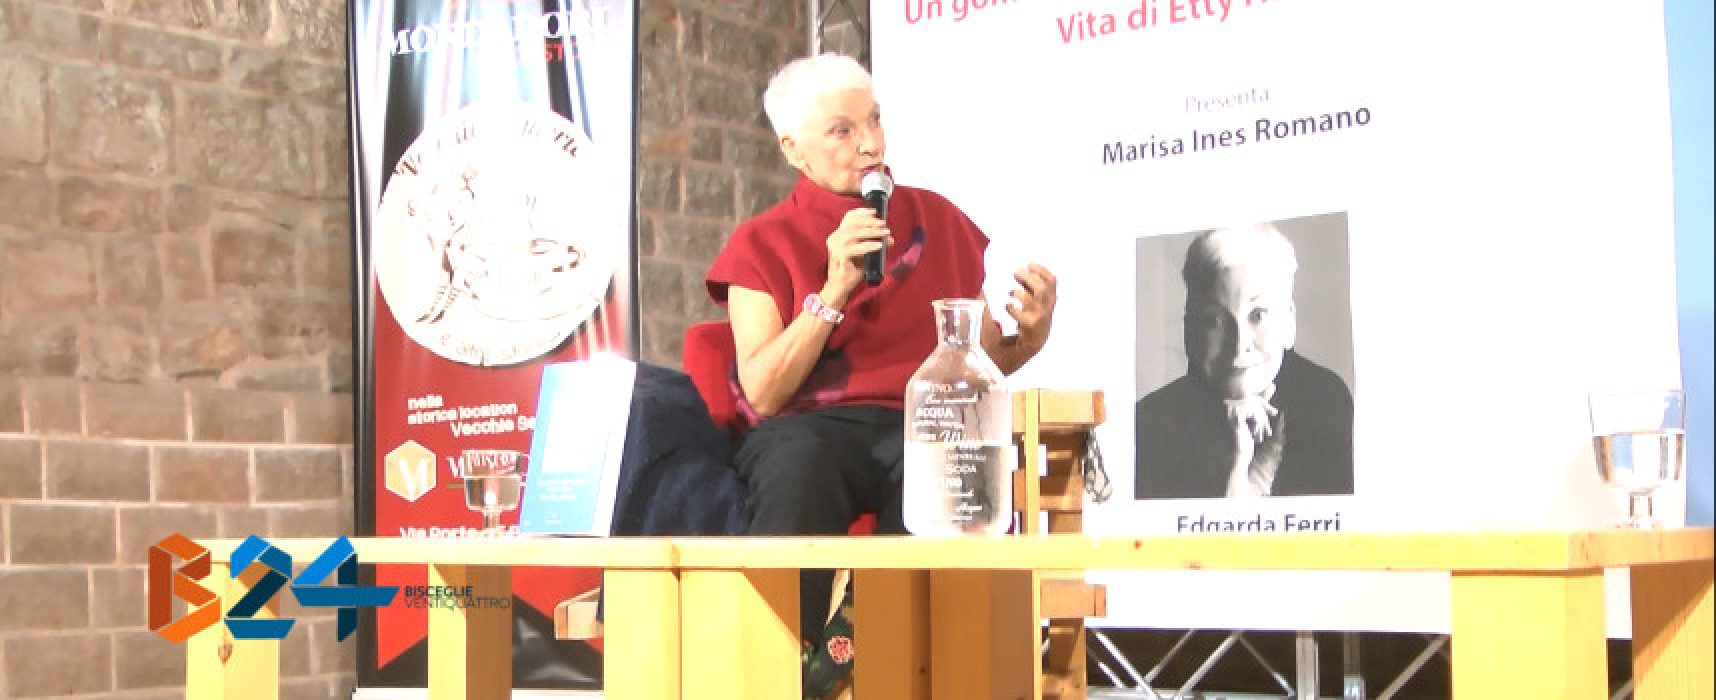 Edgarda Ferri alle Vecchie Segherie Mastrototaro racconta la vita di Etty Hillesum / VIDEO